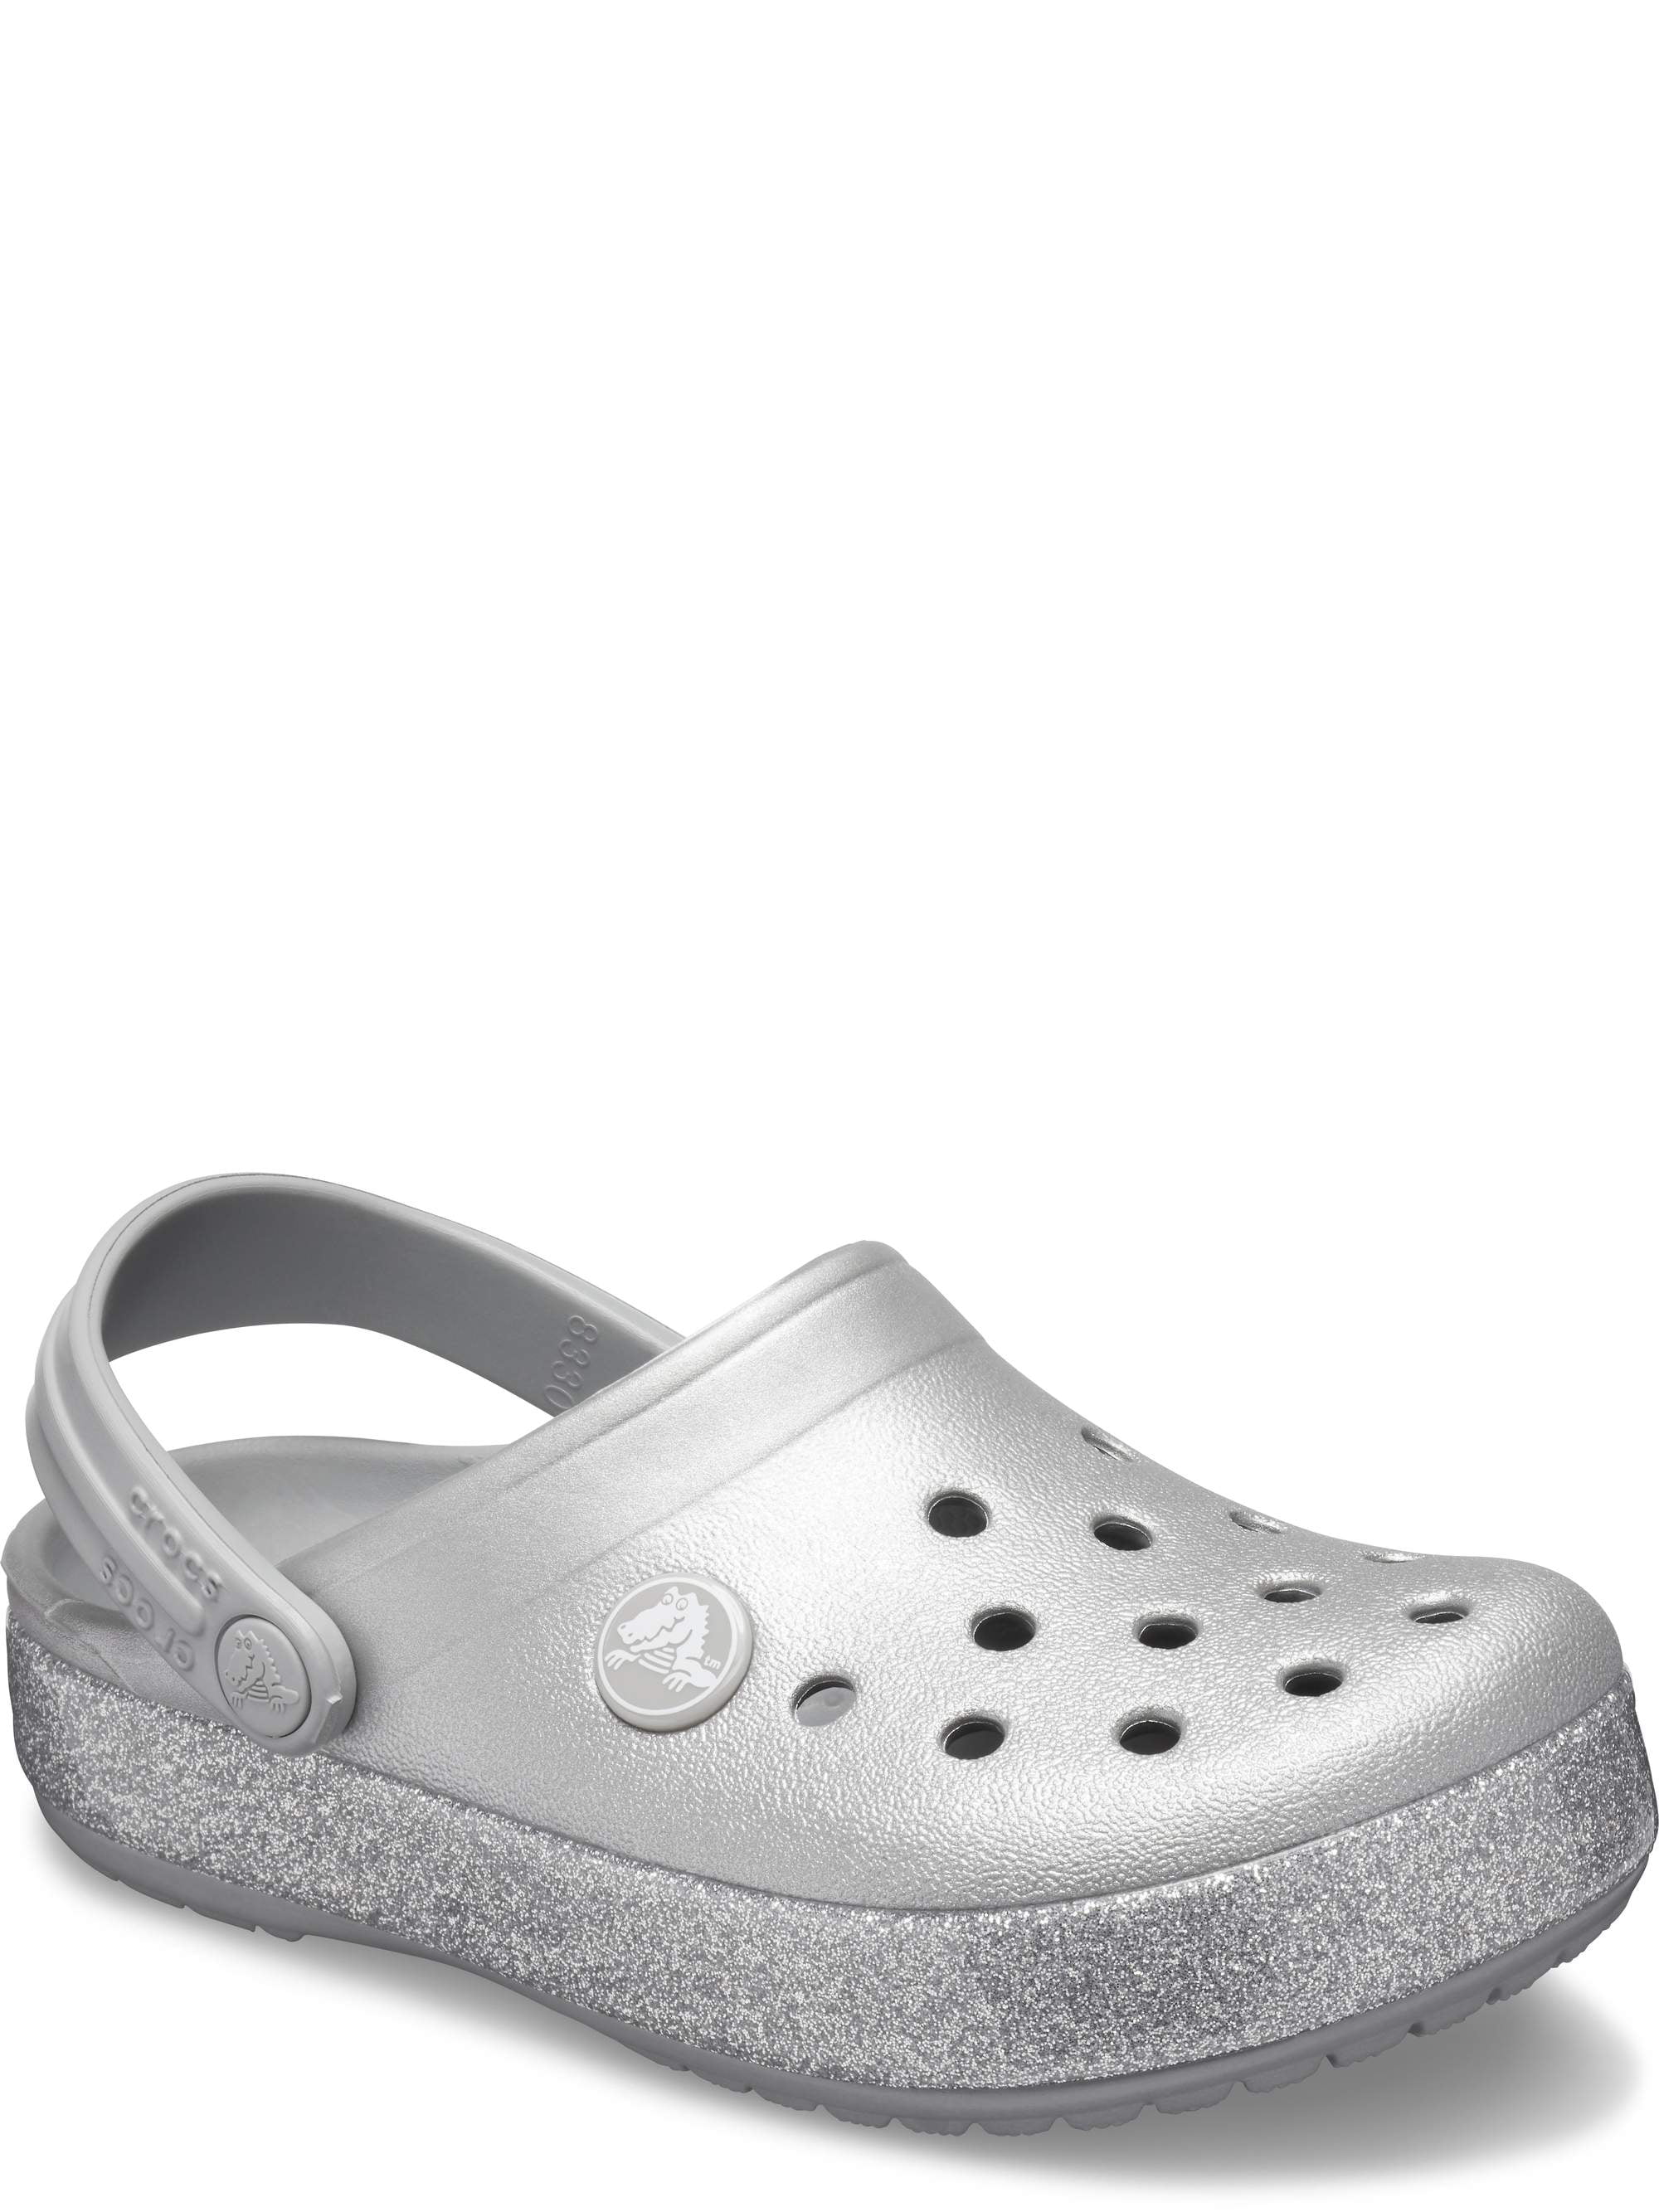 white glitter crocs